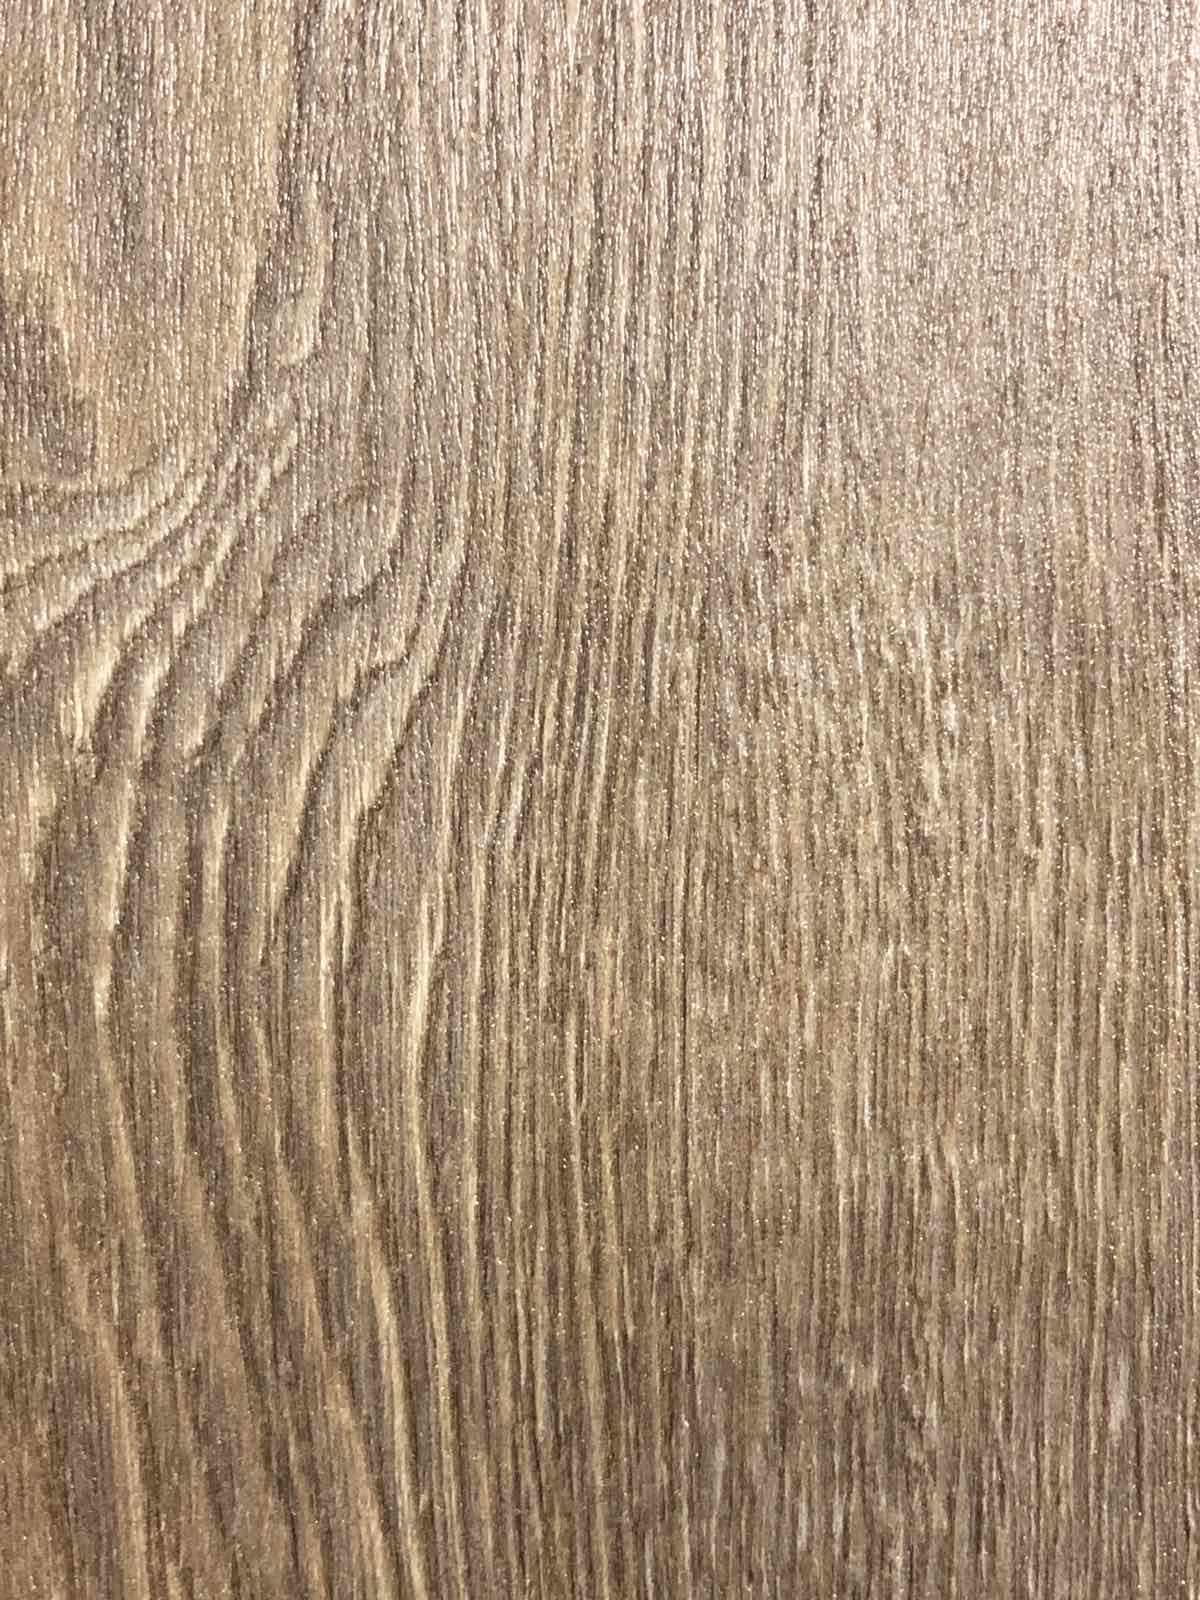 Rustic Fine Oak